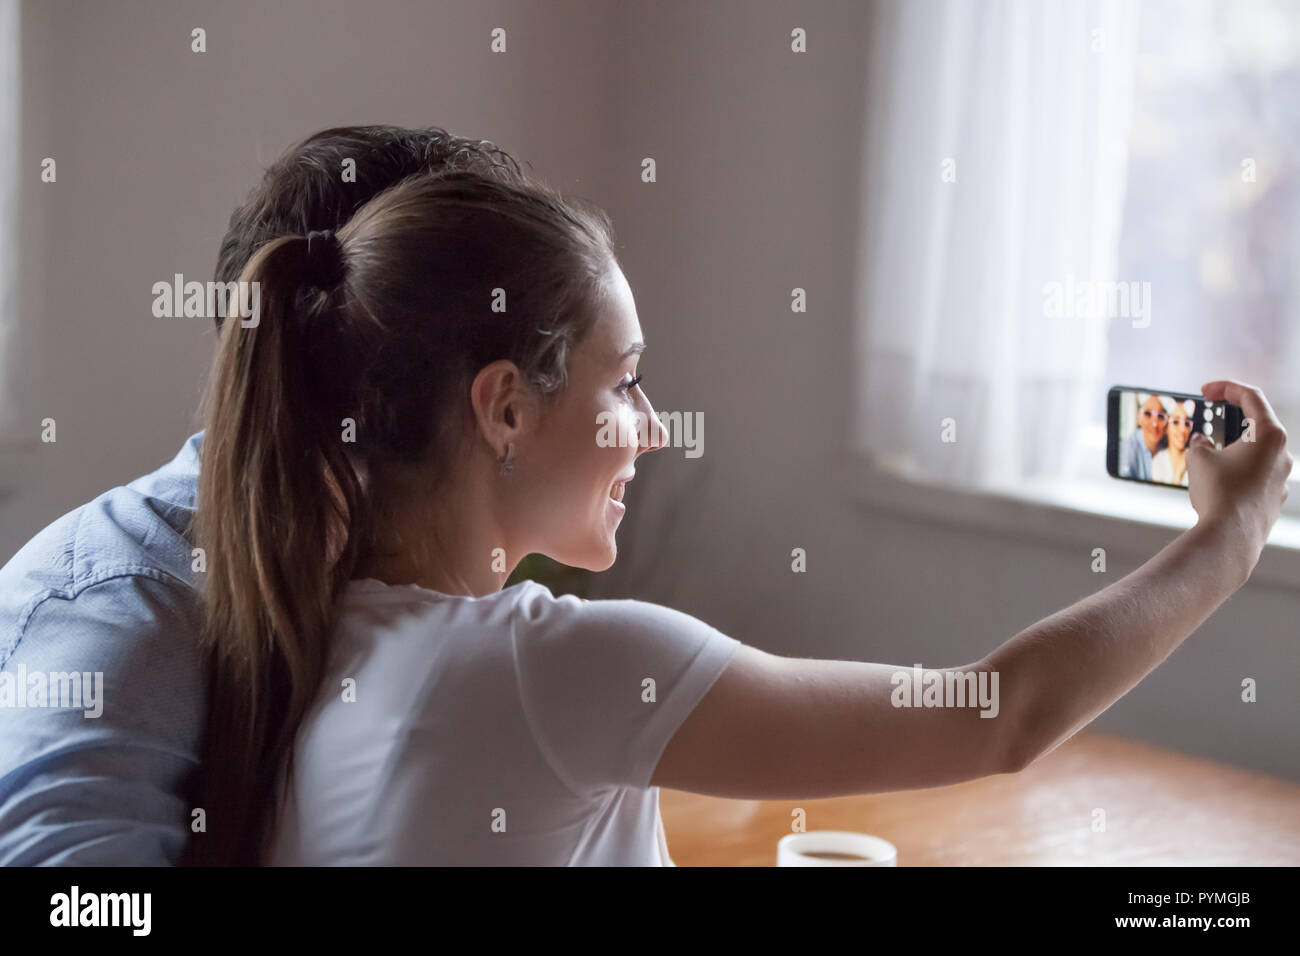 Frau mit Telefon mit der Kamera machen selfie geschaltet Stockfoto